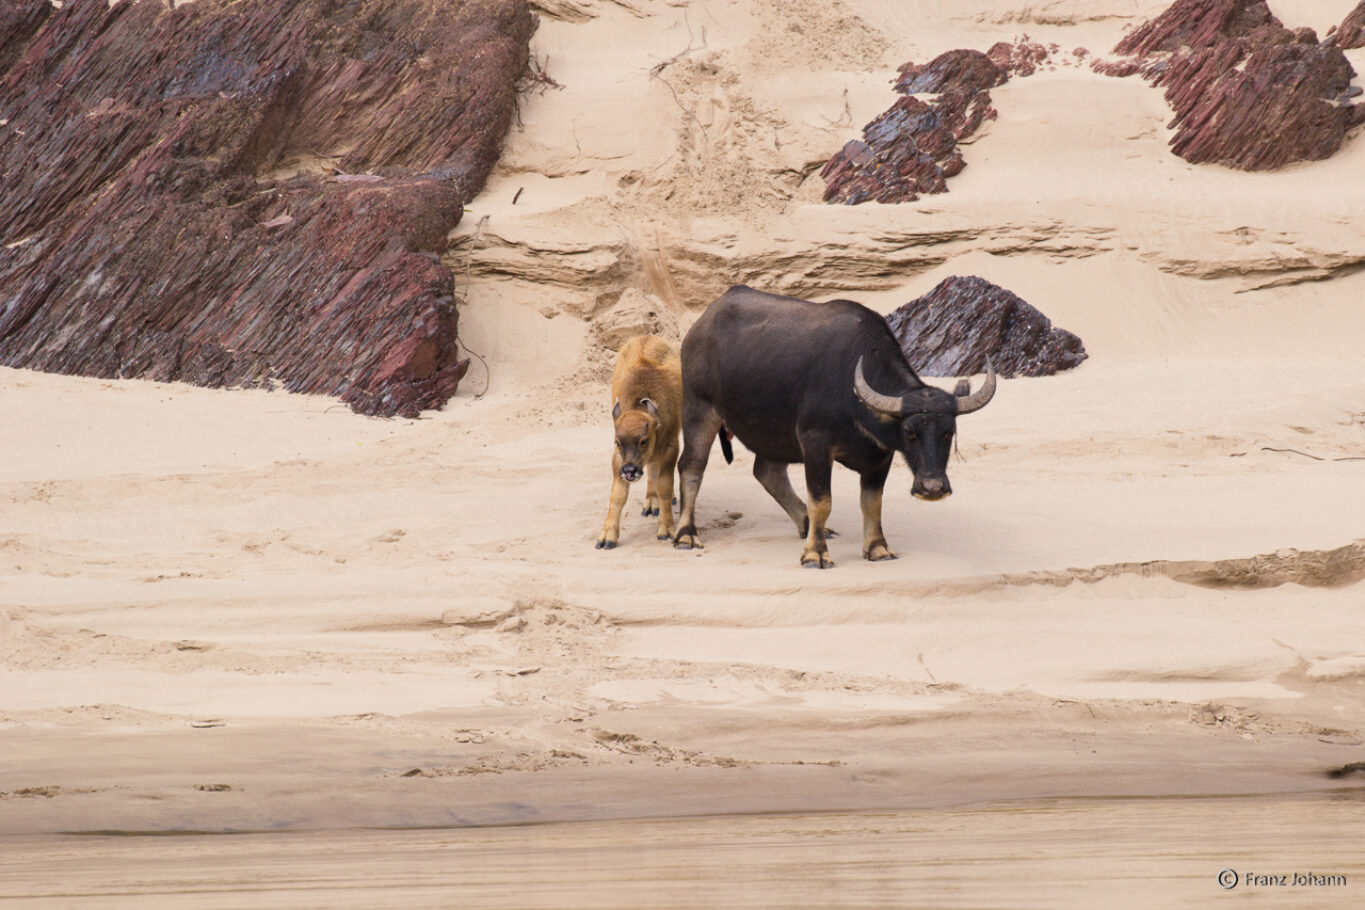 Water buffalos on a sandy beach; Laos